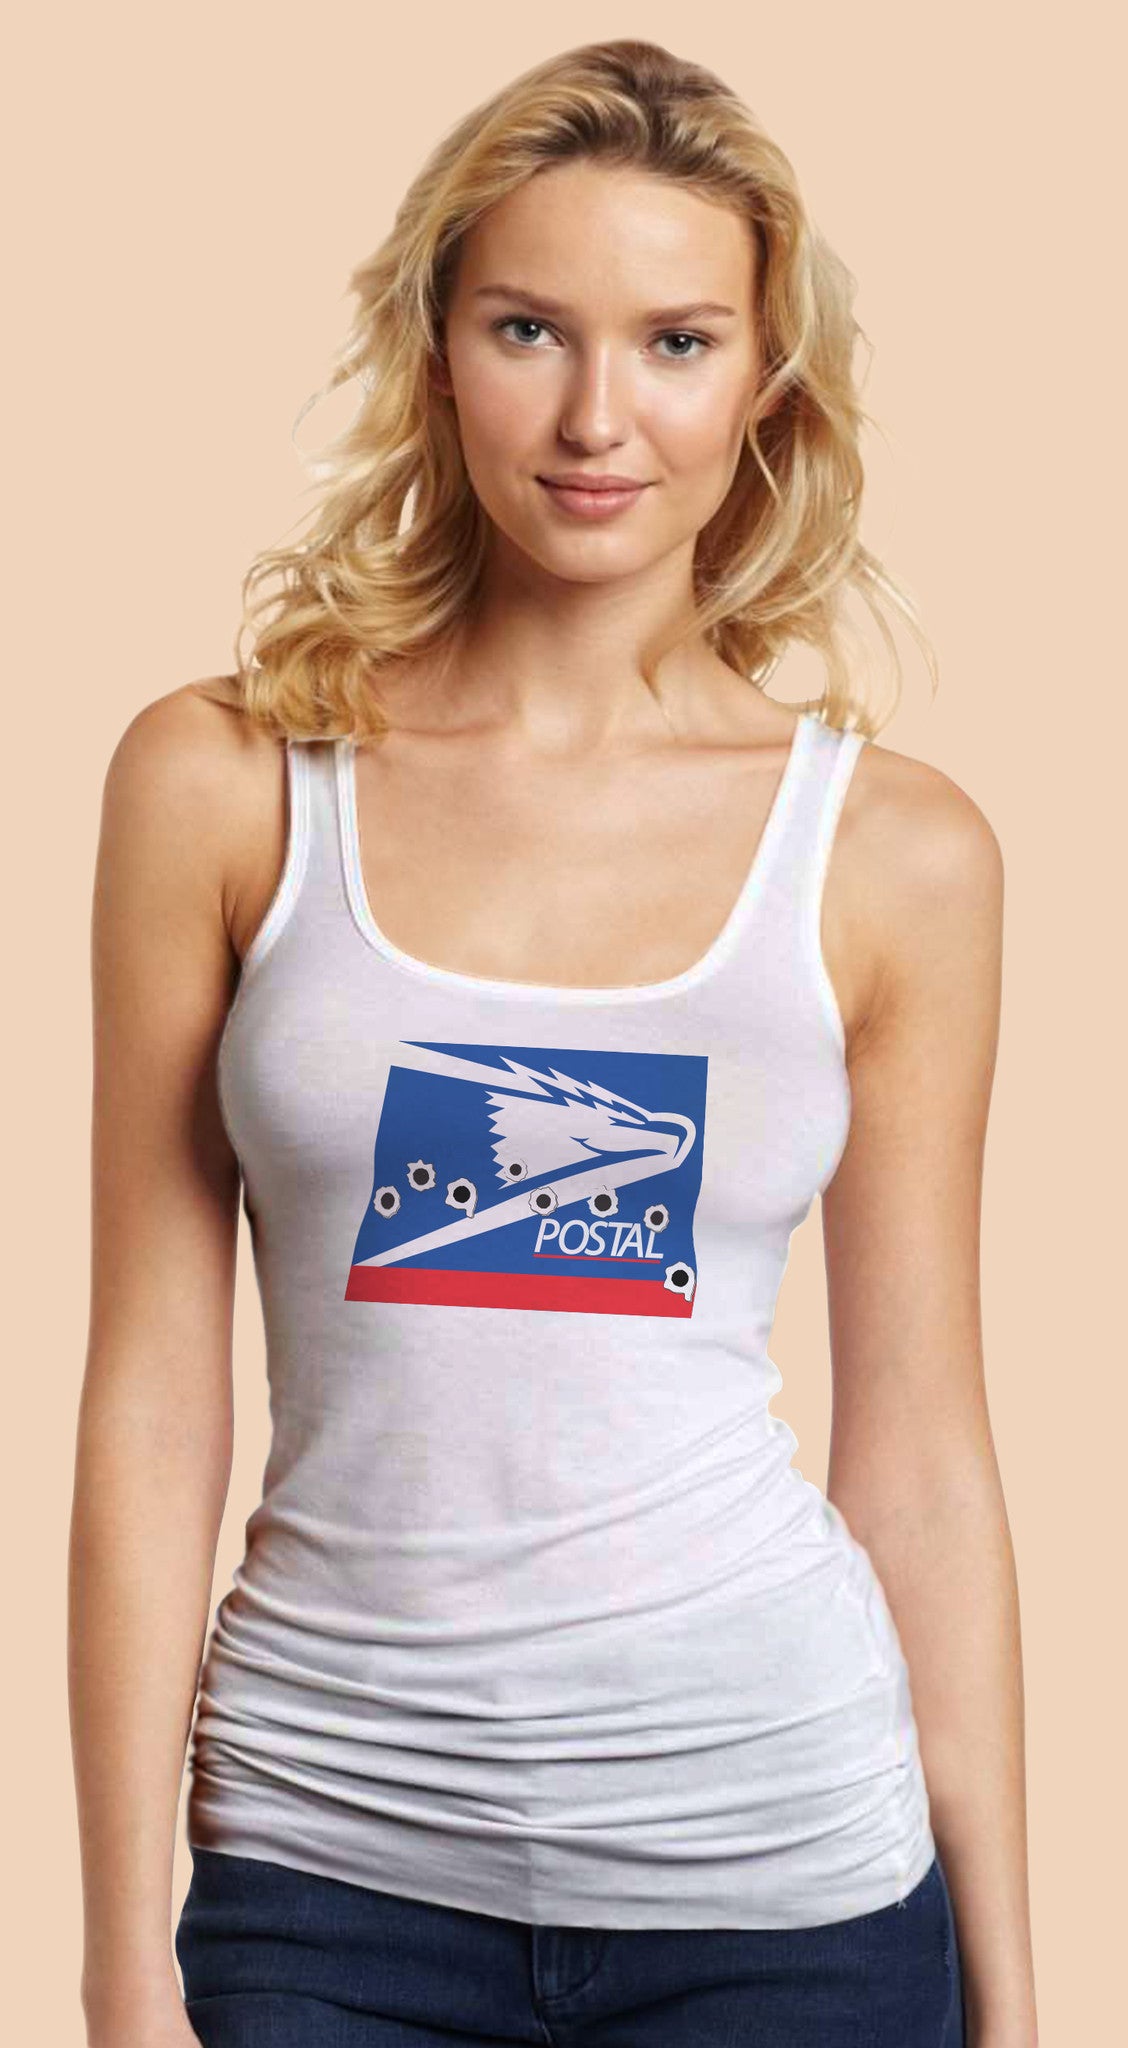 Postal White Tanktop T-shirt for Women - TshirtNow.net - 1